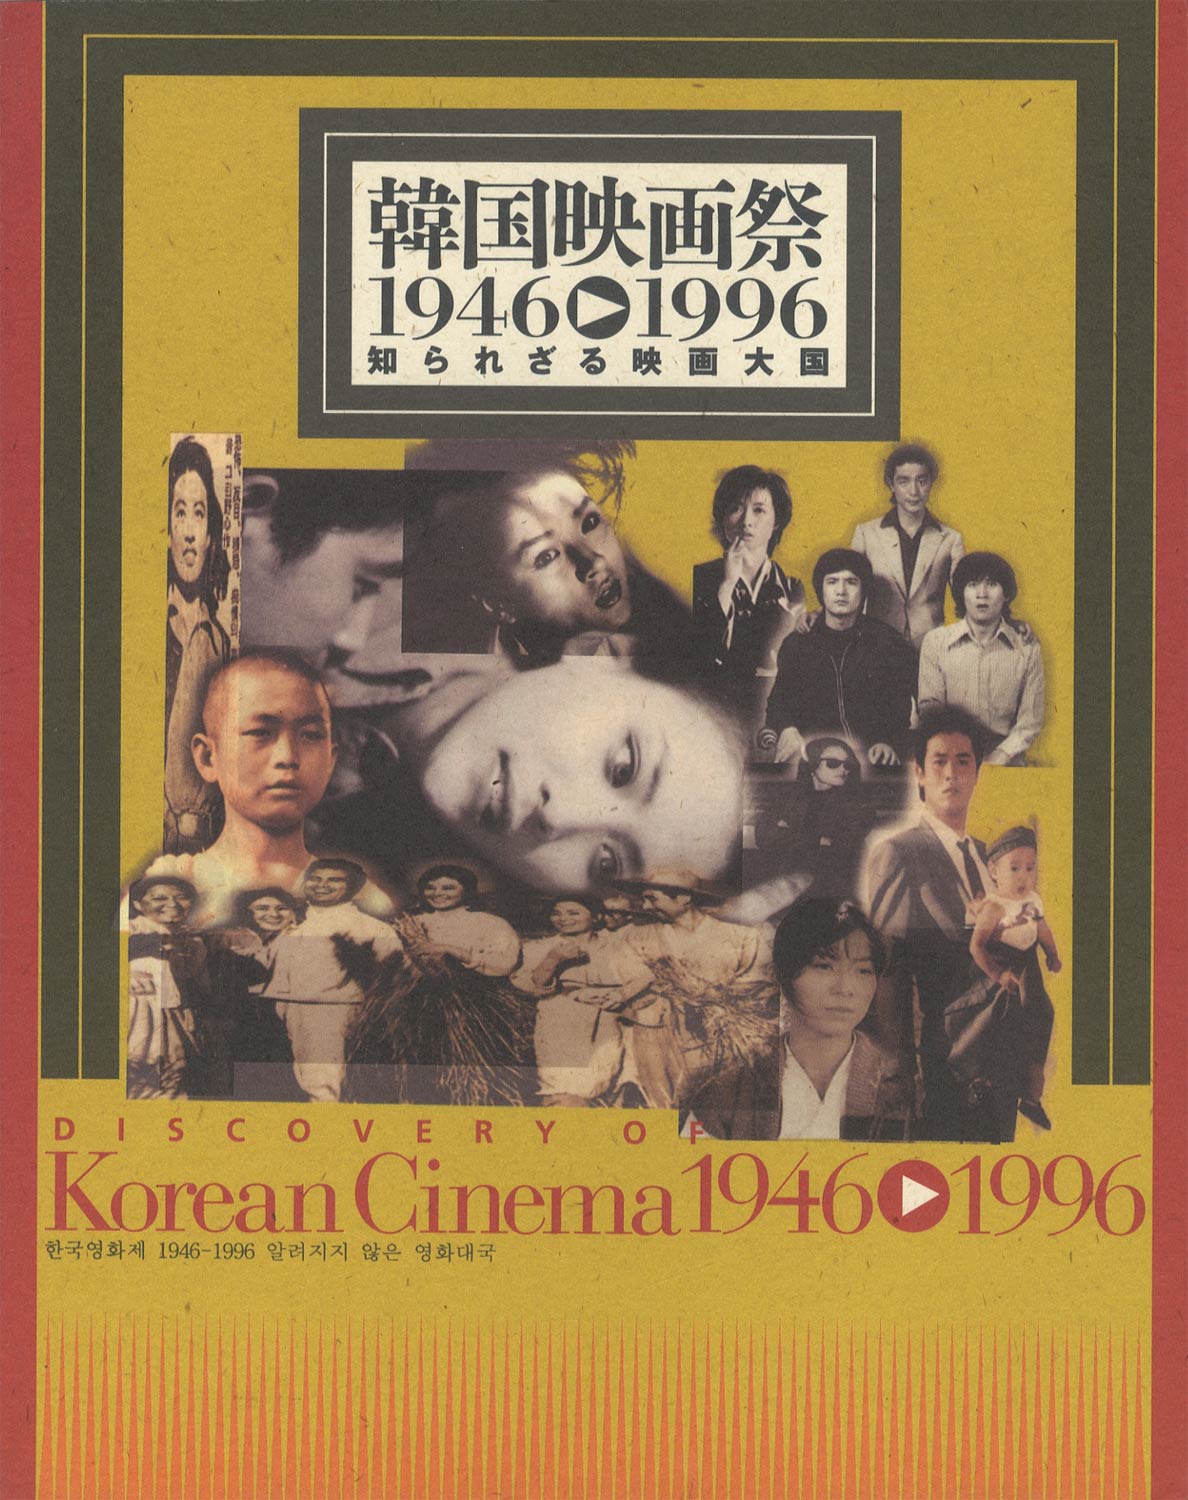 韓国映画祭 1946-1996 知られざる映画大国